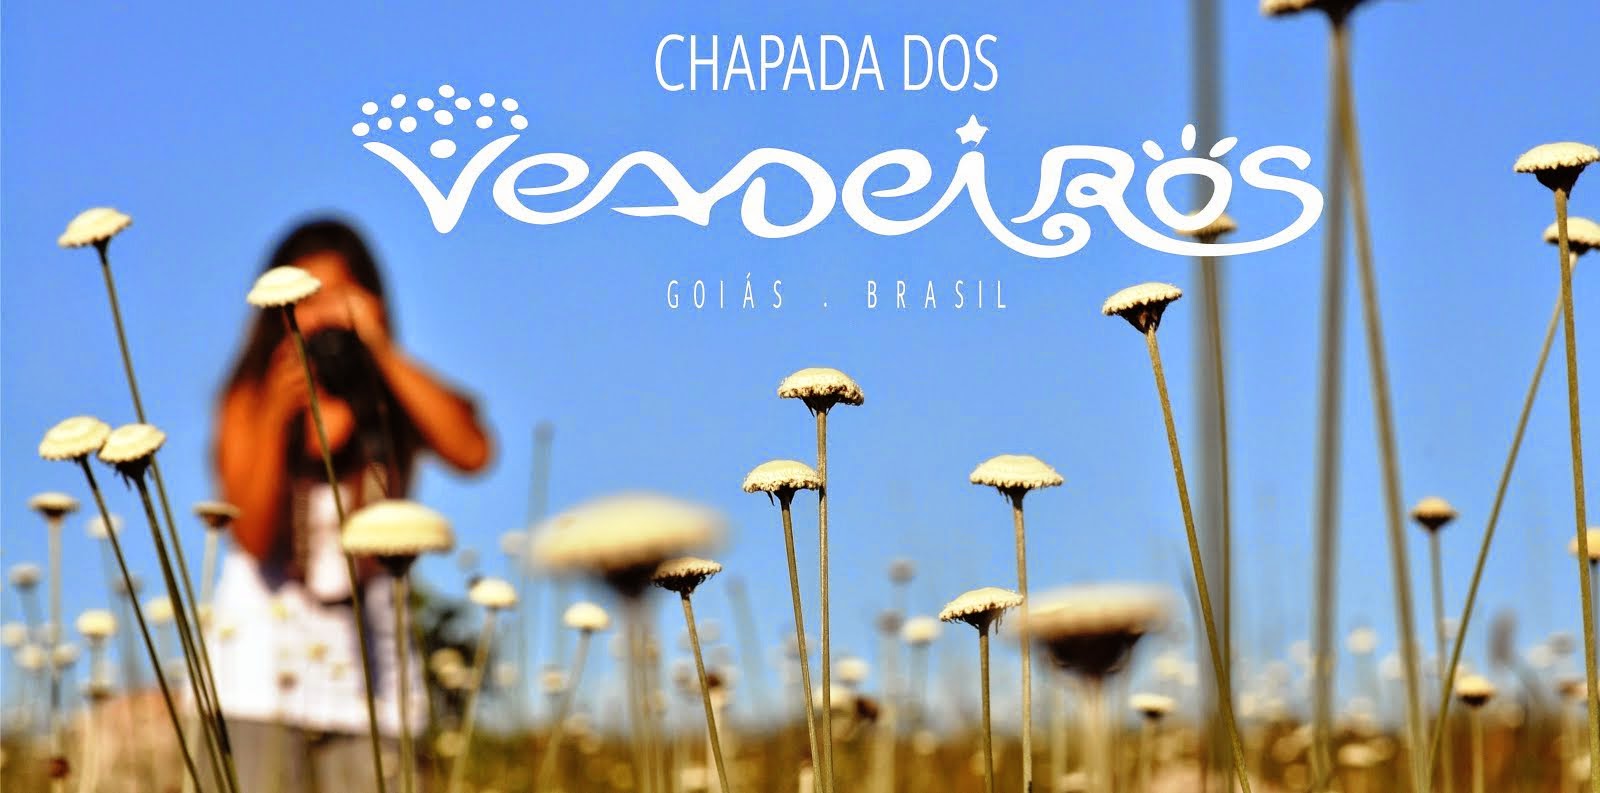 Chapada dos Veadeiros - Um Paraíso no coração do Brasil